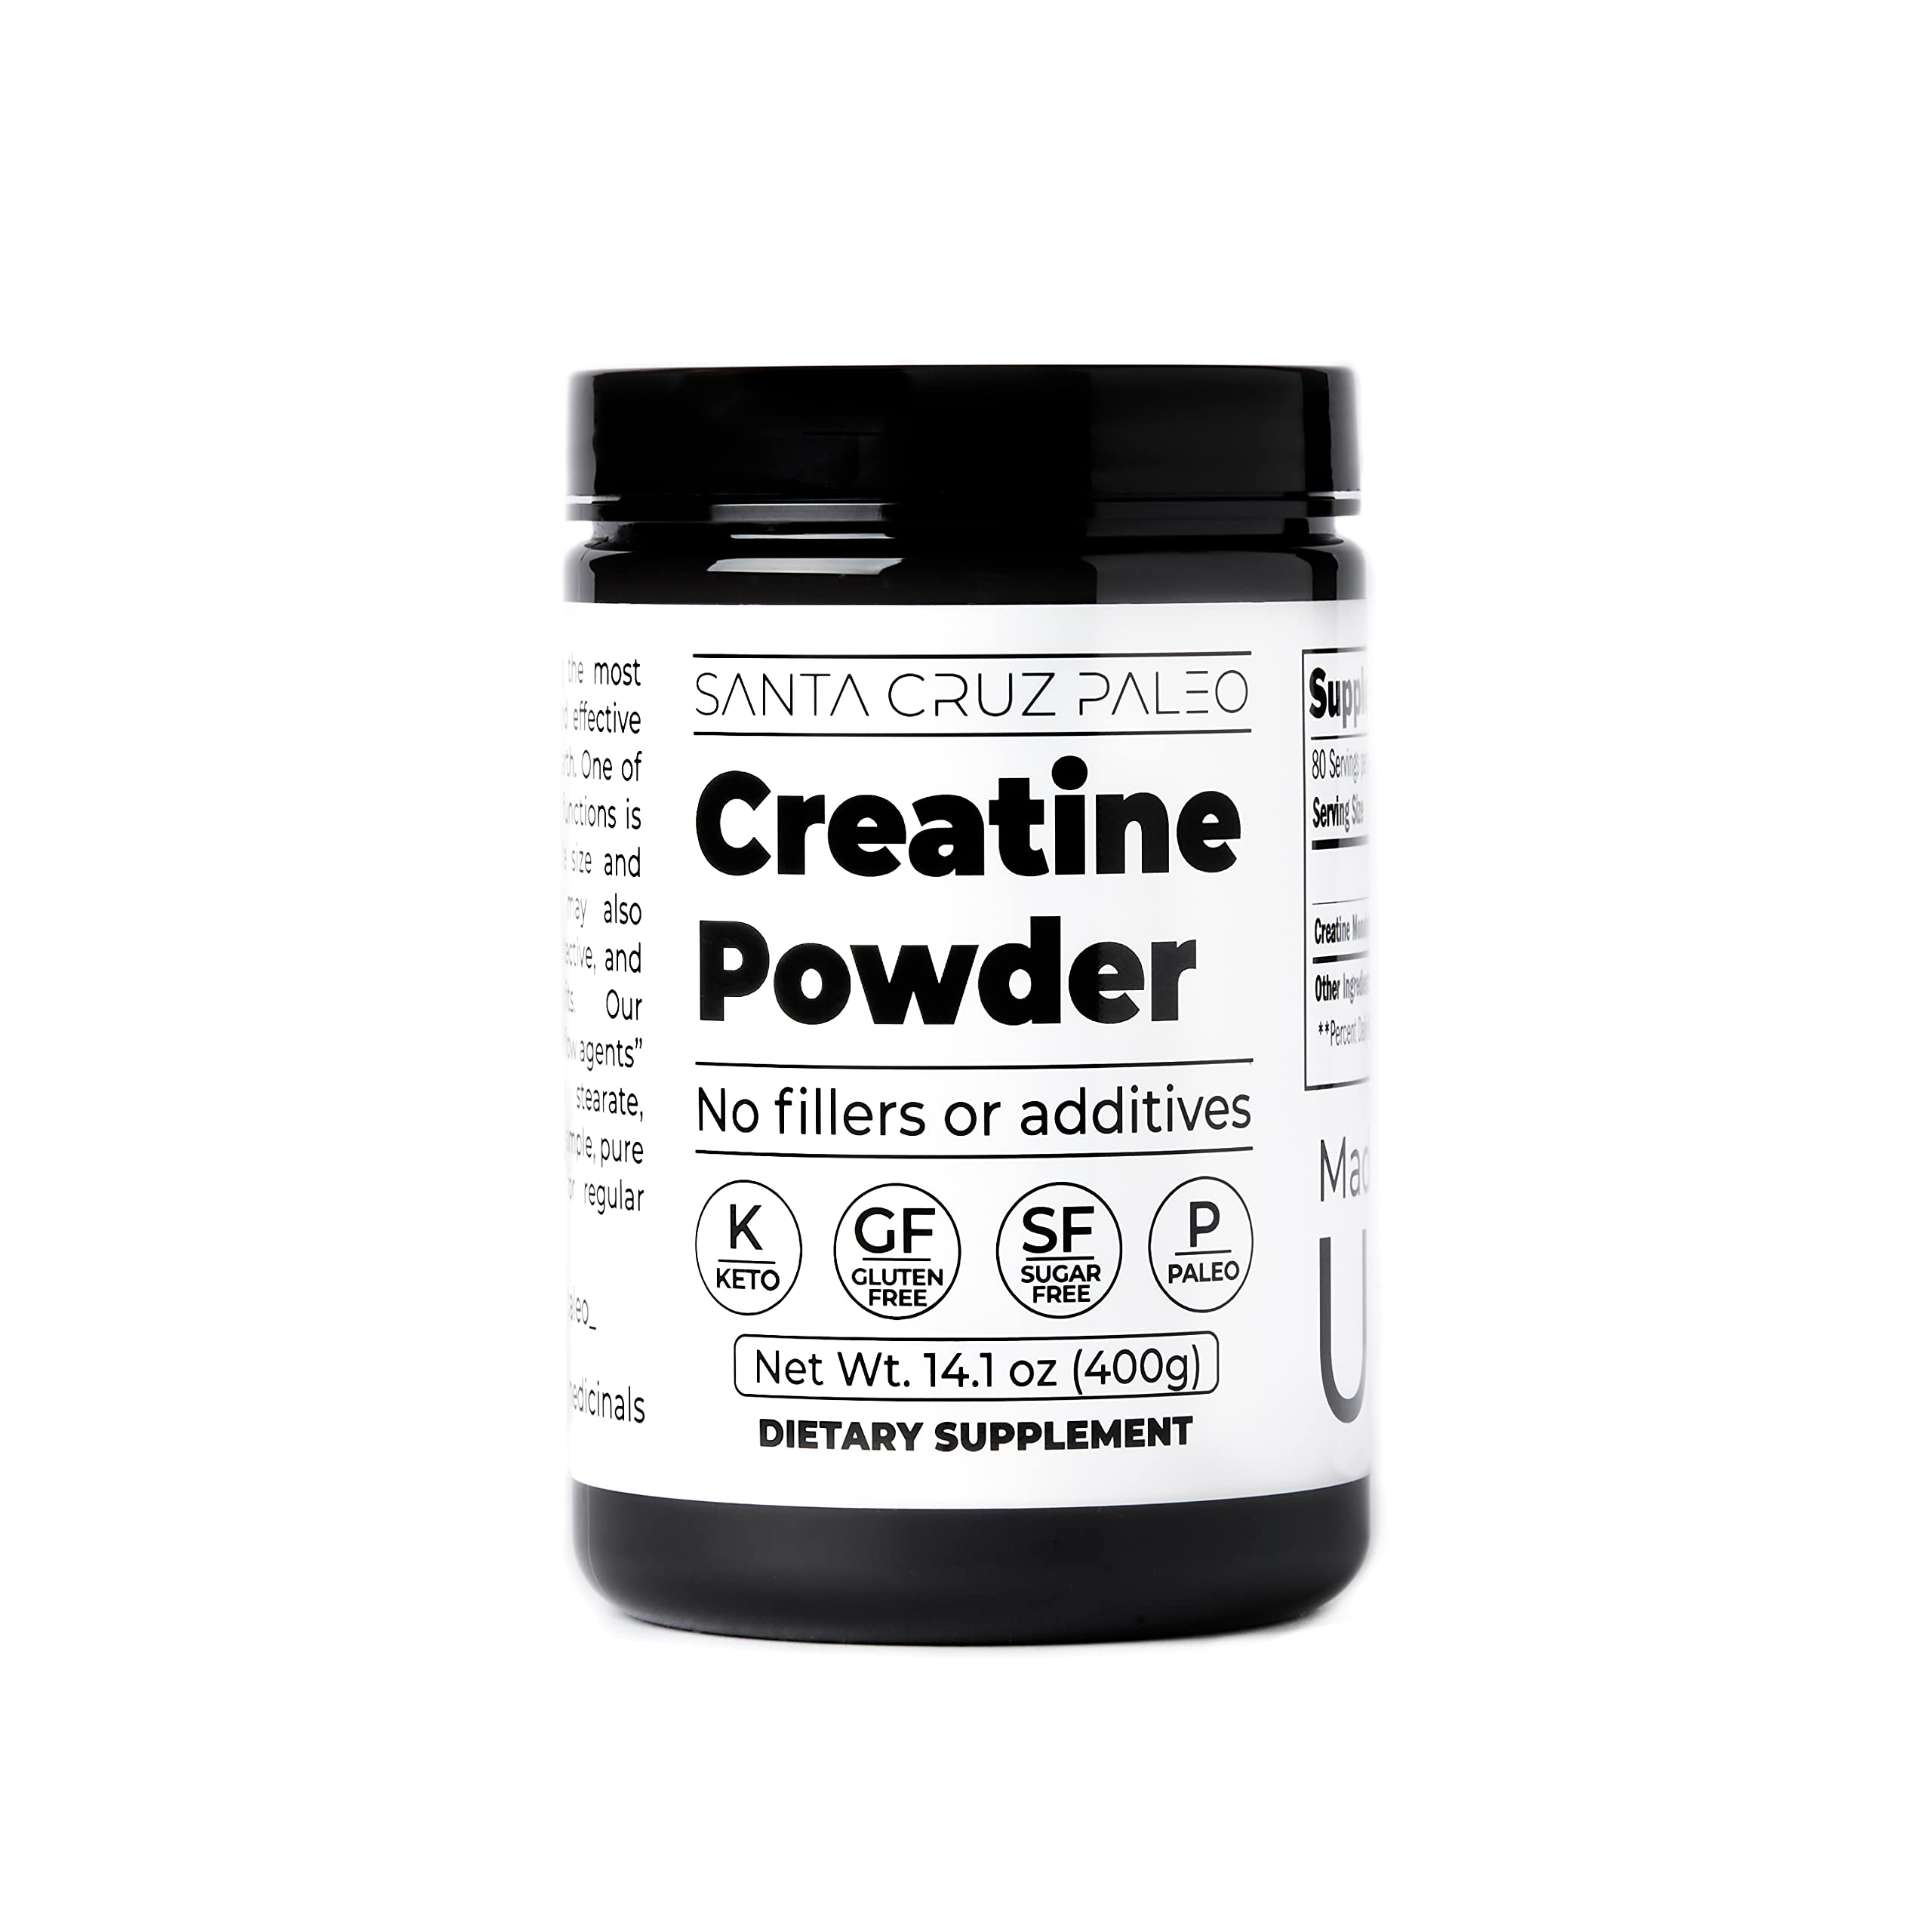 Santa Cruz Paleo - Creatine Powder - 400g